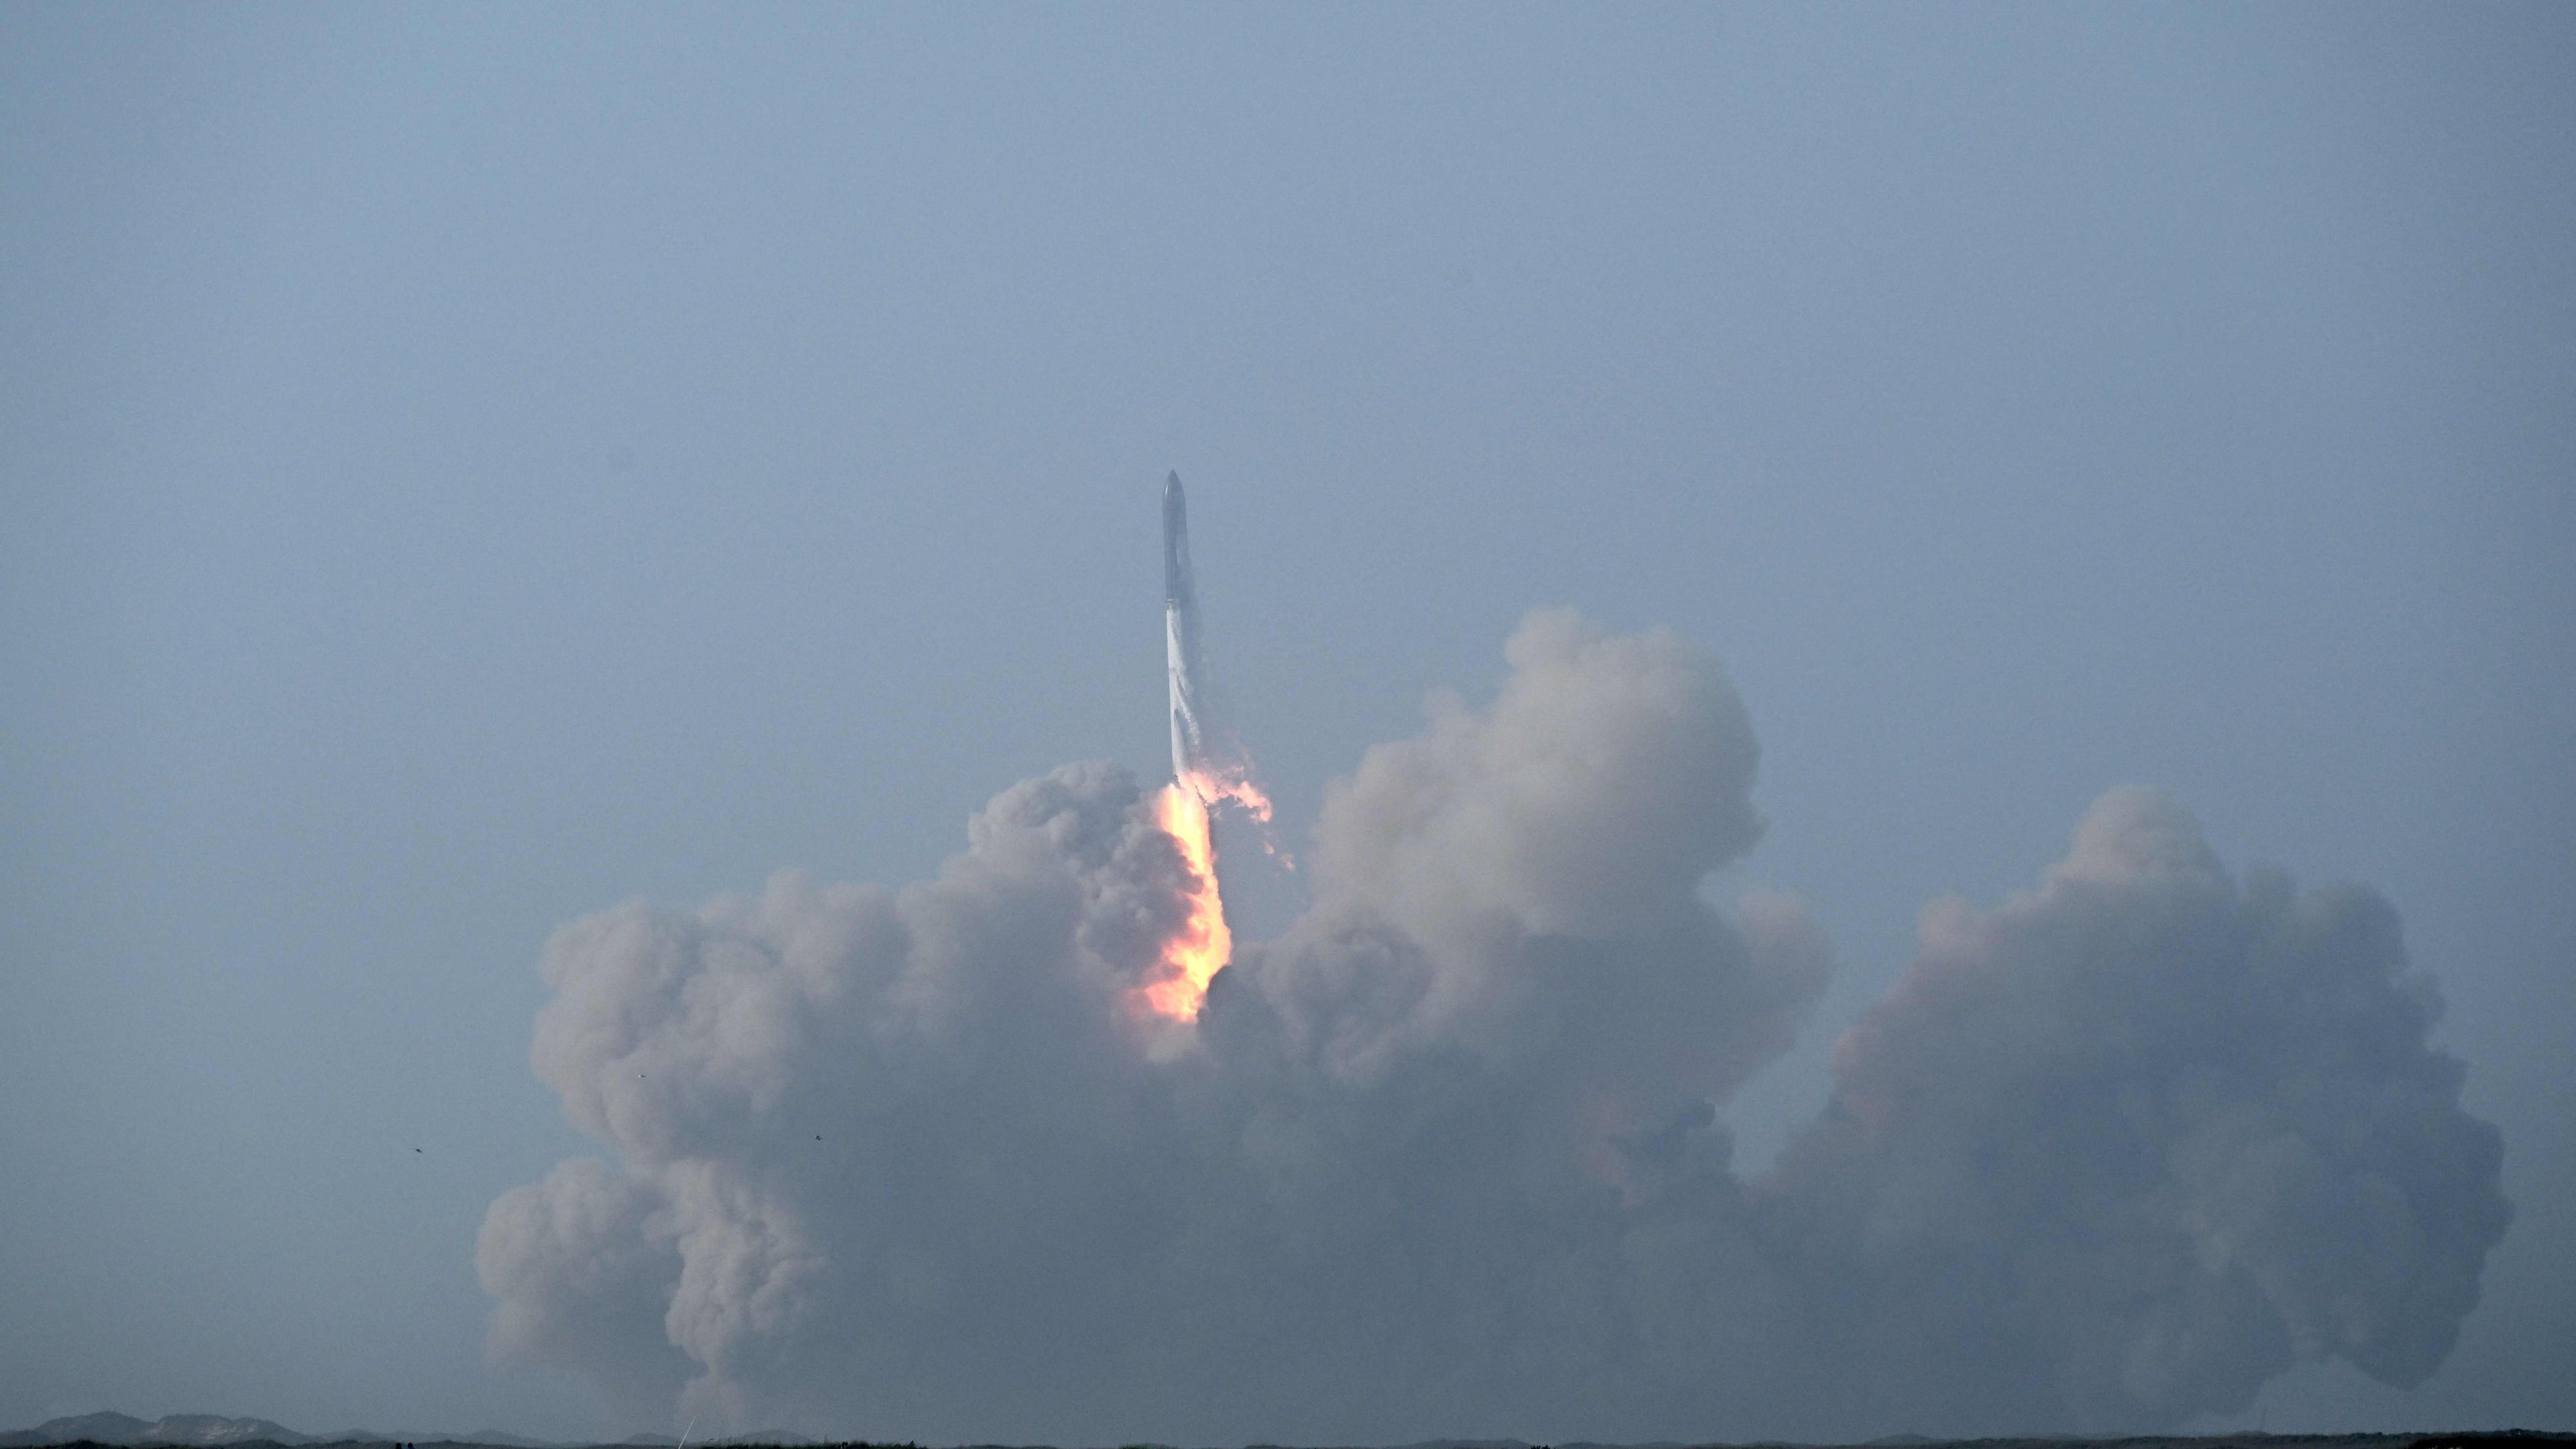 Lancement réussi pour Starship, la plus grande fusée du monde, avant son  explosion